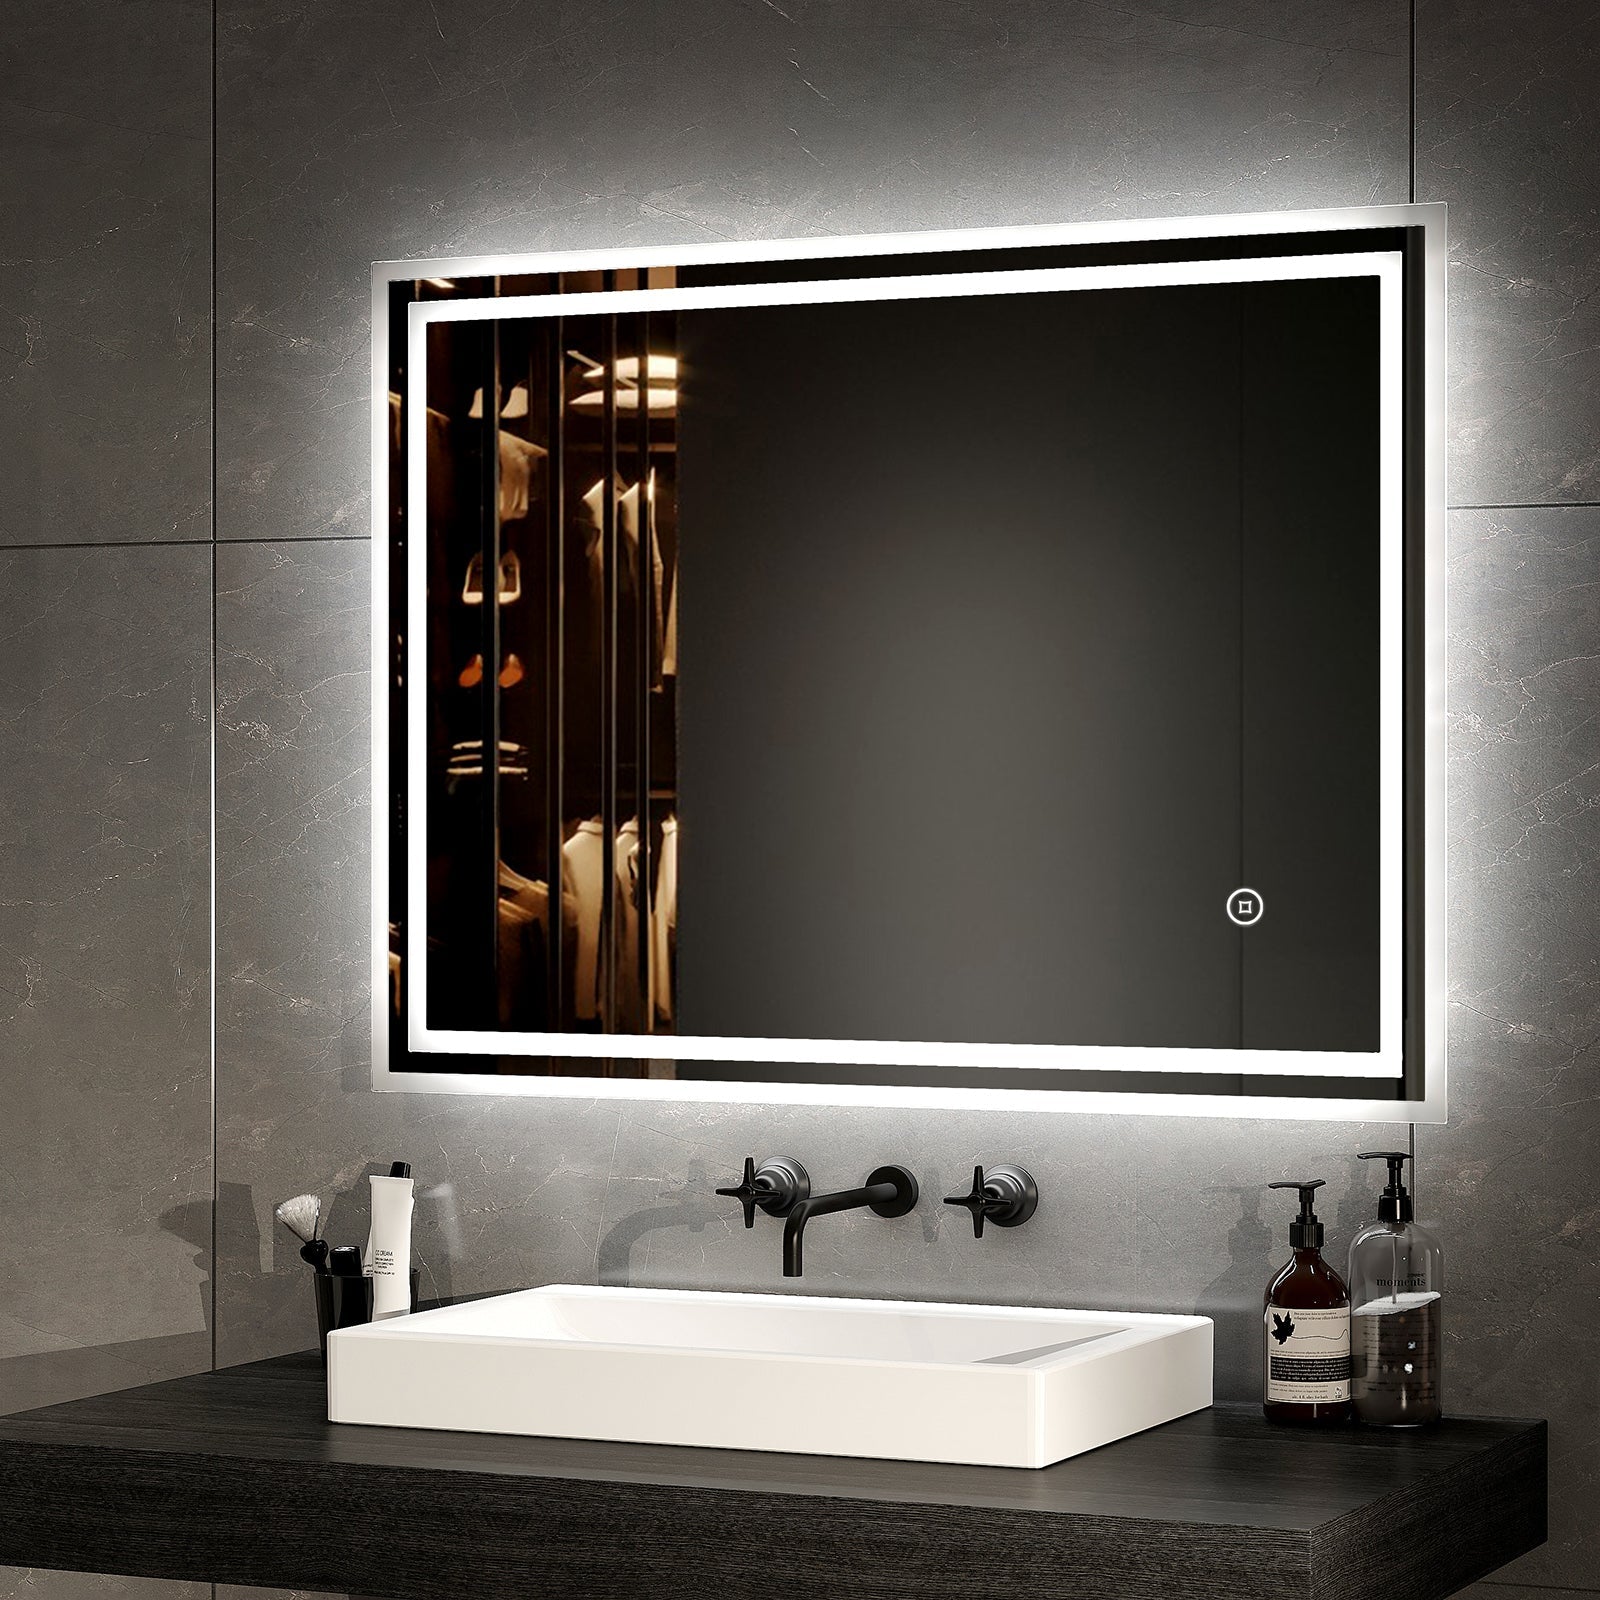 EMKE LED Spiegel Badezimmer – Touch – 3 Lichtfarben – Dimmbar – Beschlagfrei – 80 x 60 cm – IP44